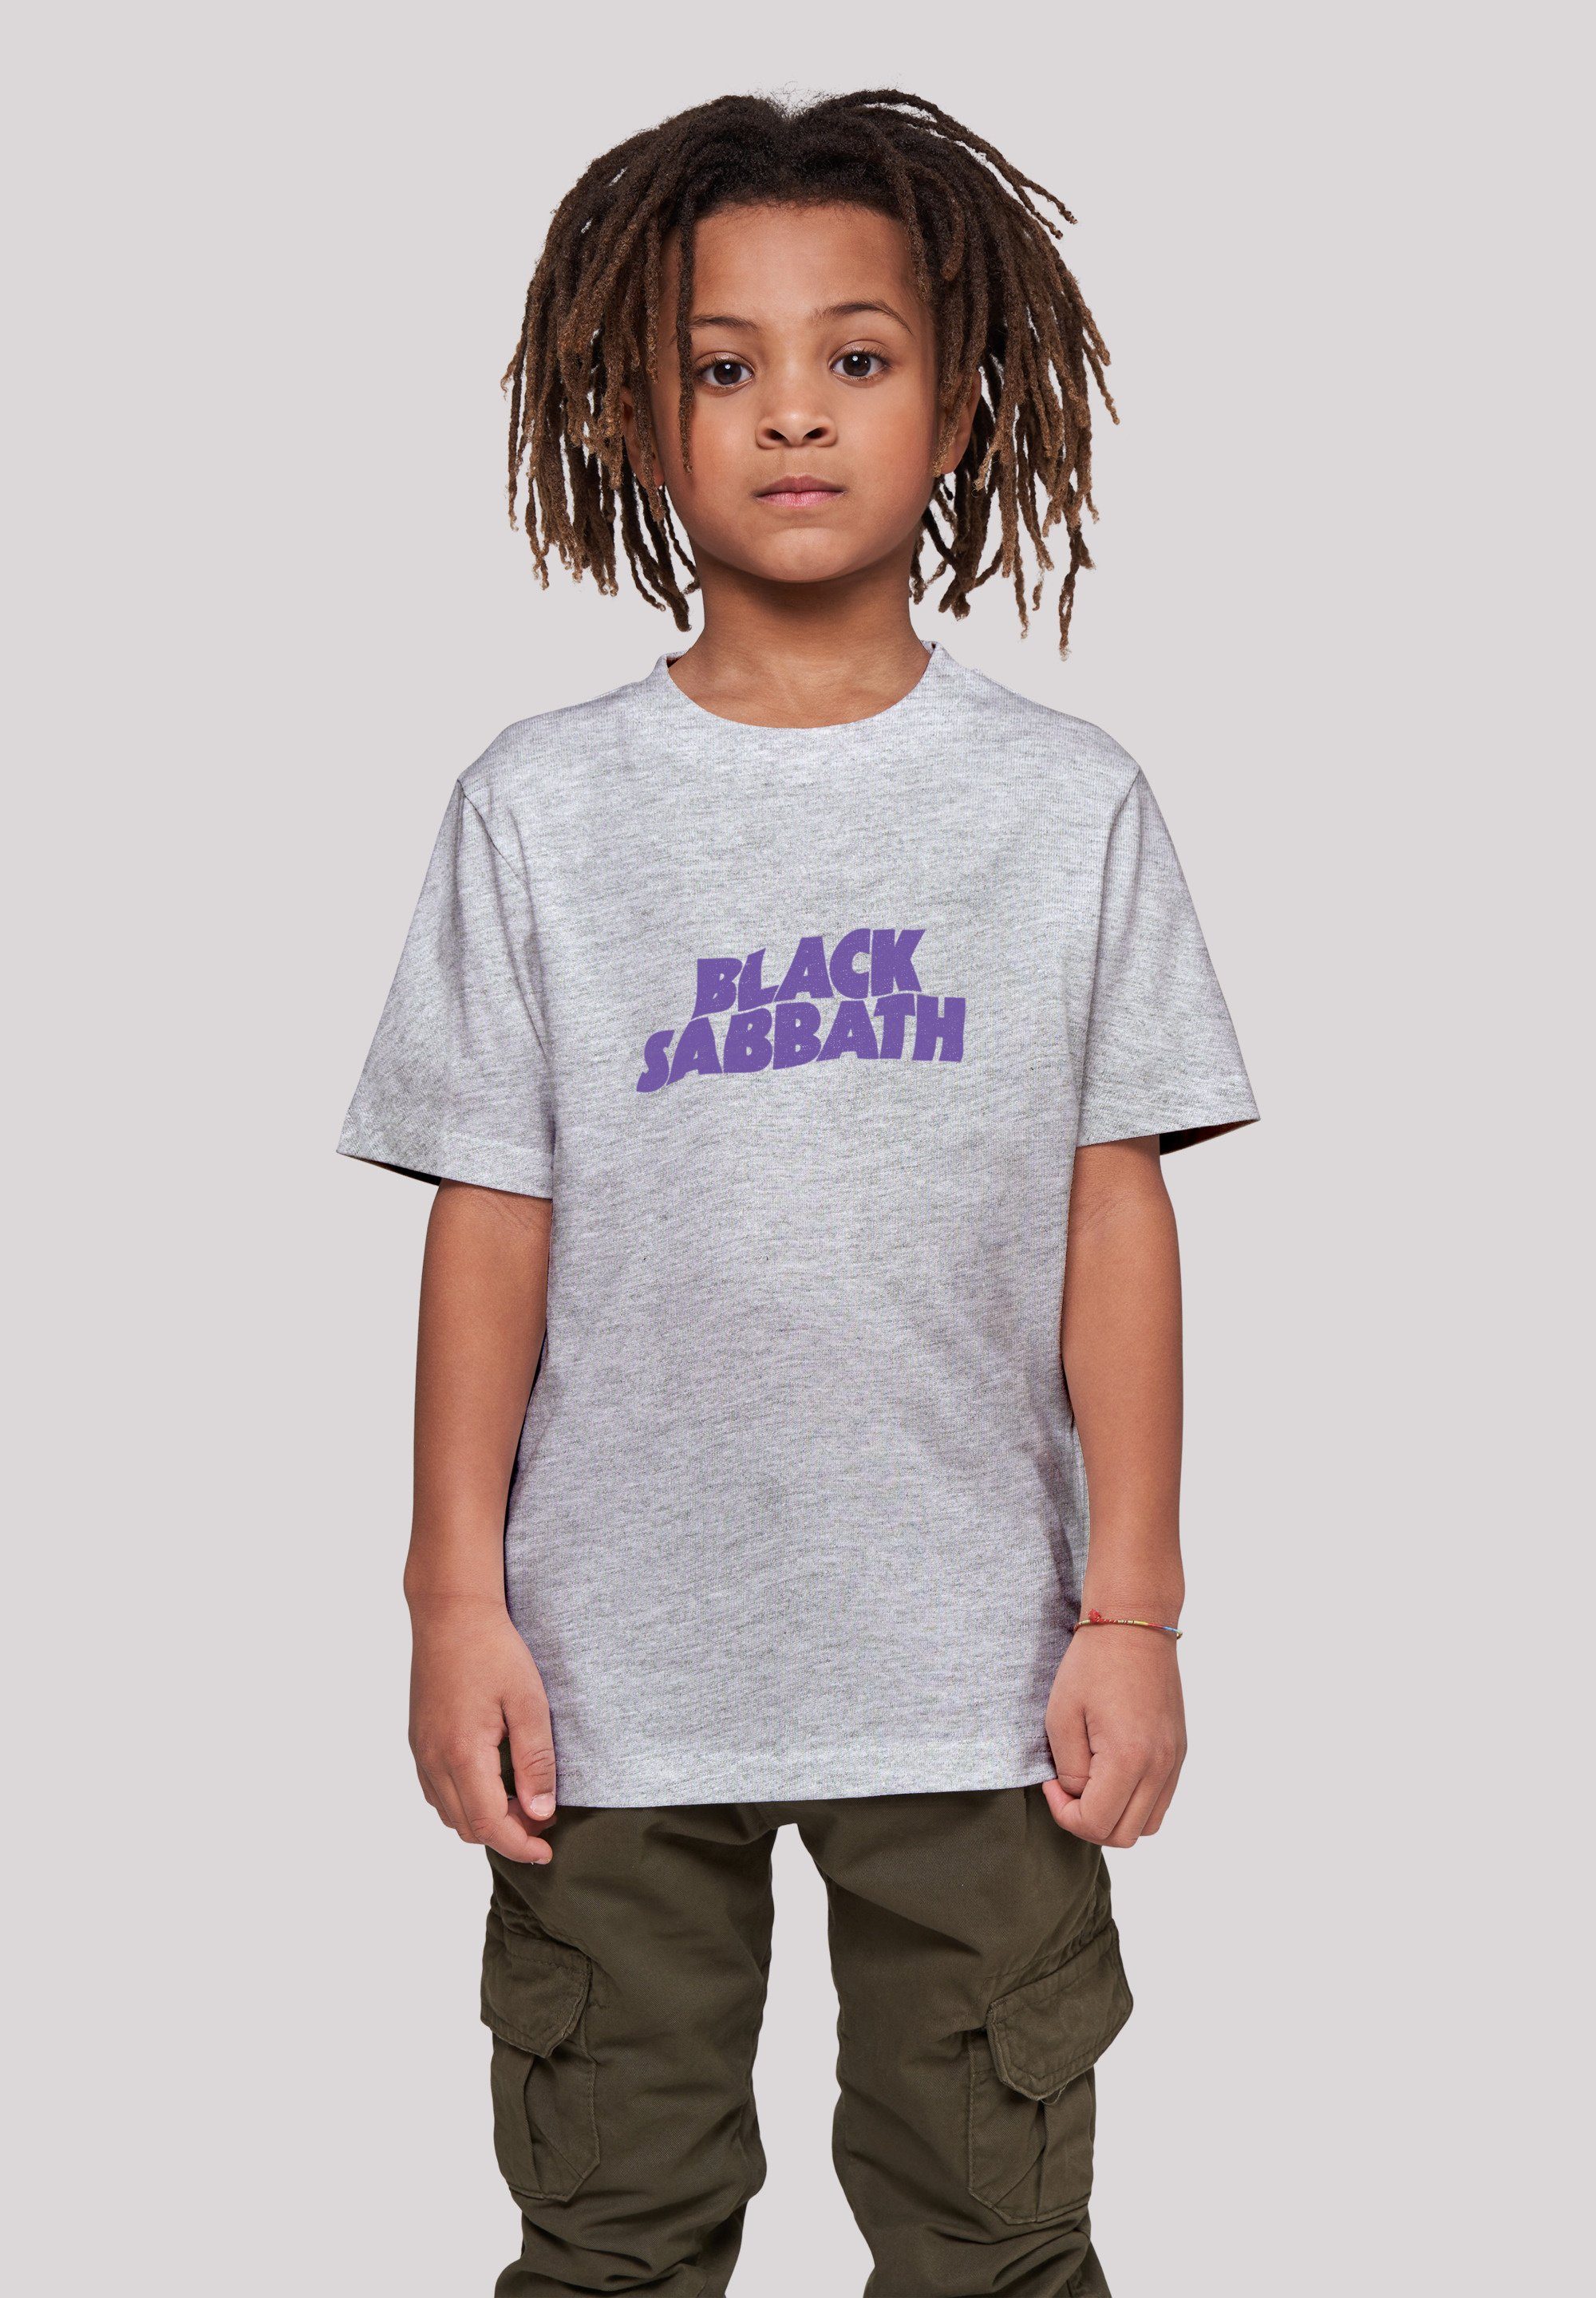 F4NT4STIC T-Shirt Black Sabbath Heavy Das Black Band Metal 145/152 Größe Print, cm trägt Wavy Logo Model ist groß und 145